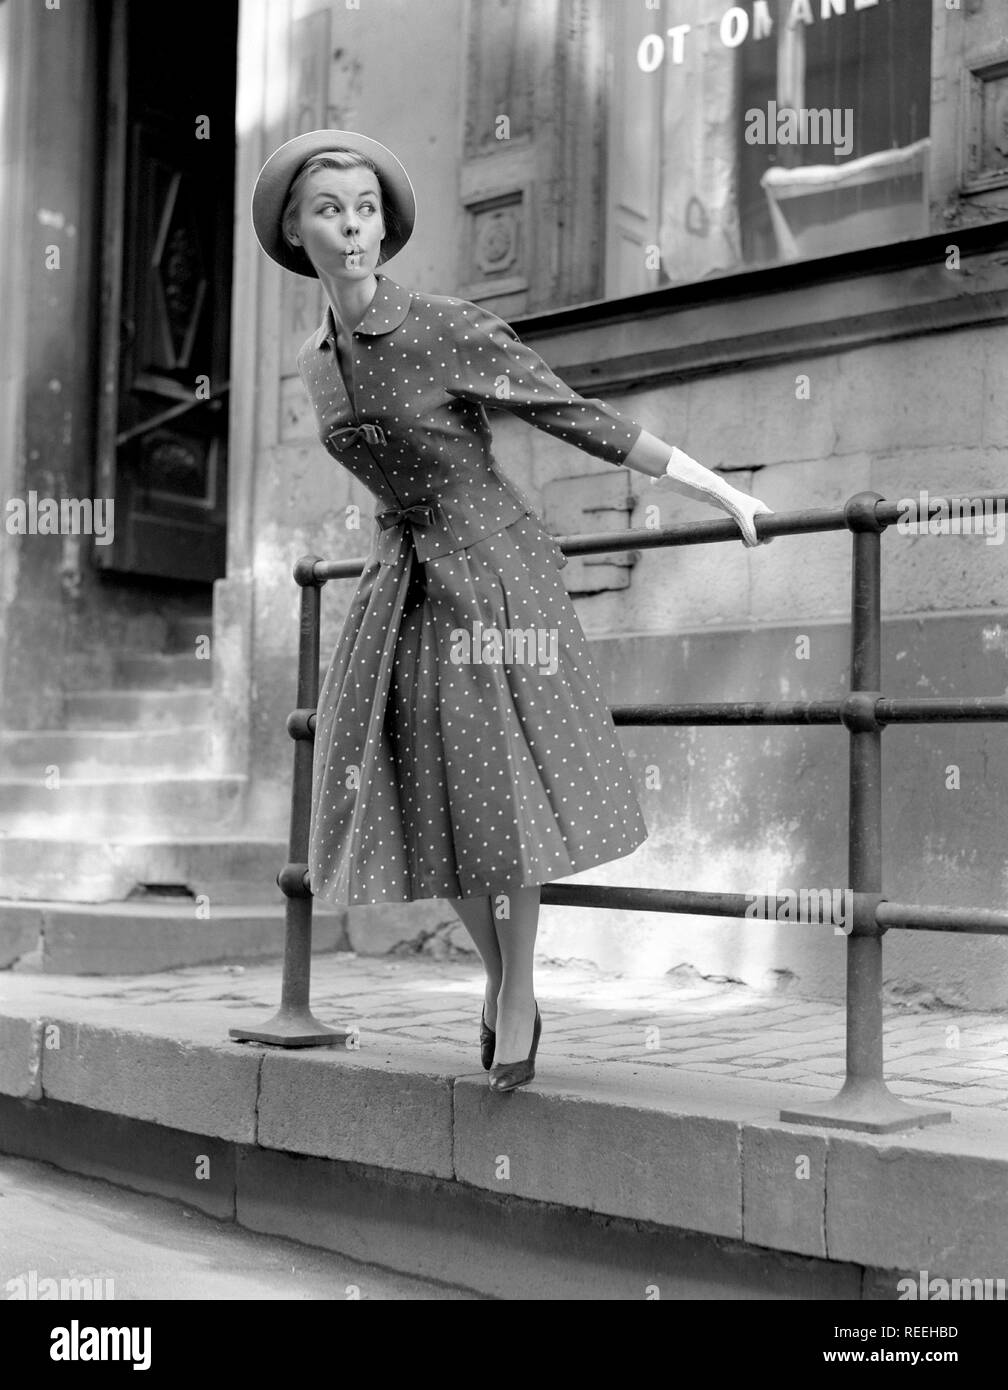 Mode In Den 50er Jahren Eine Junge Frau Tragt Eine Typische 50er Jahre Kleid Das Muster